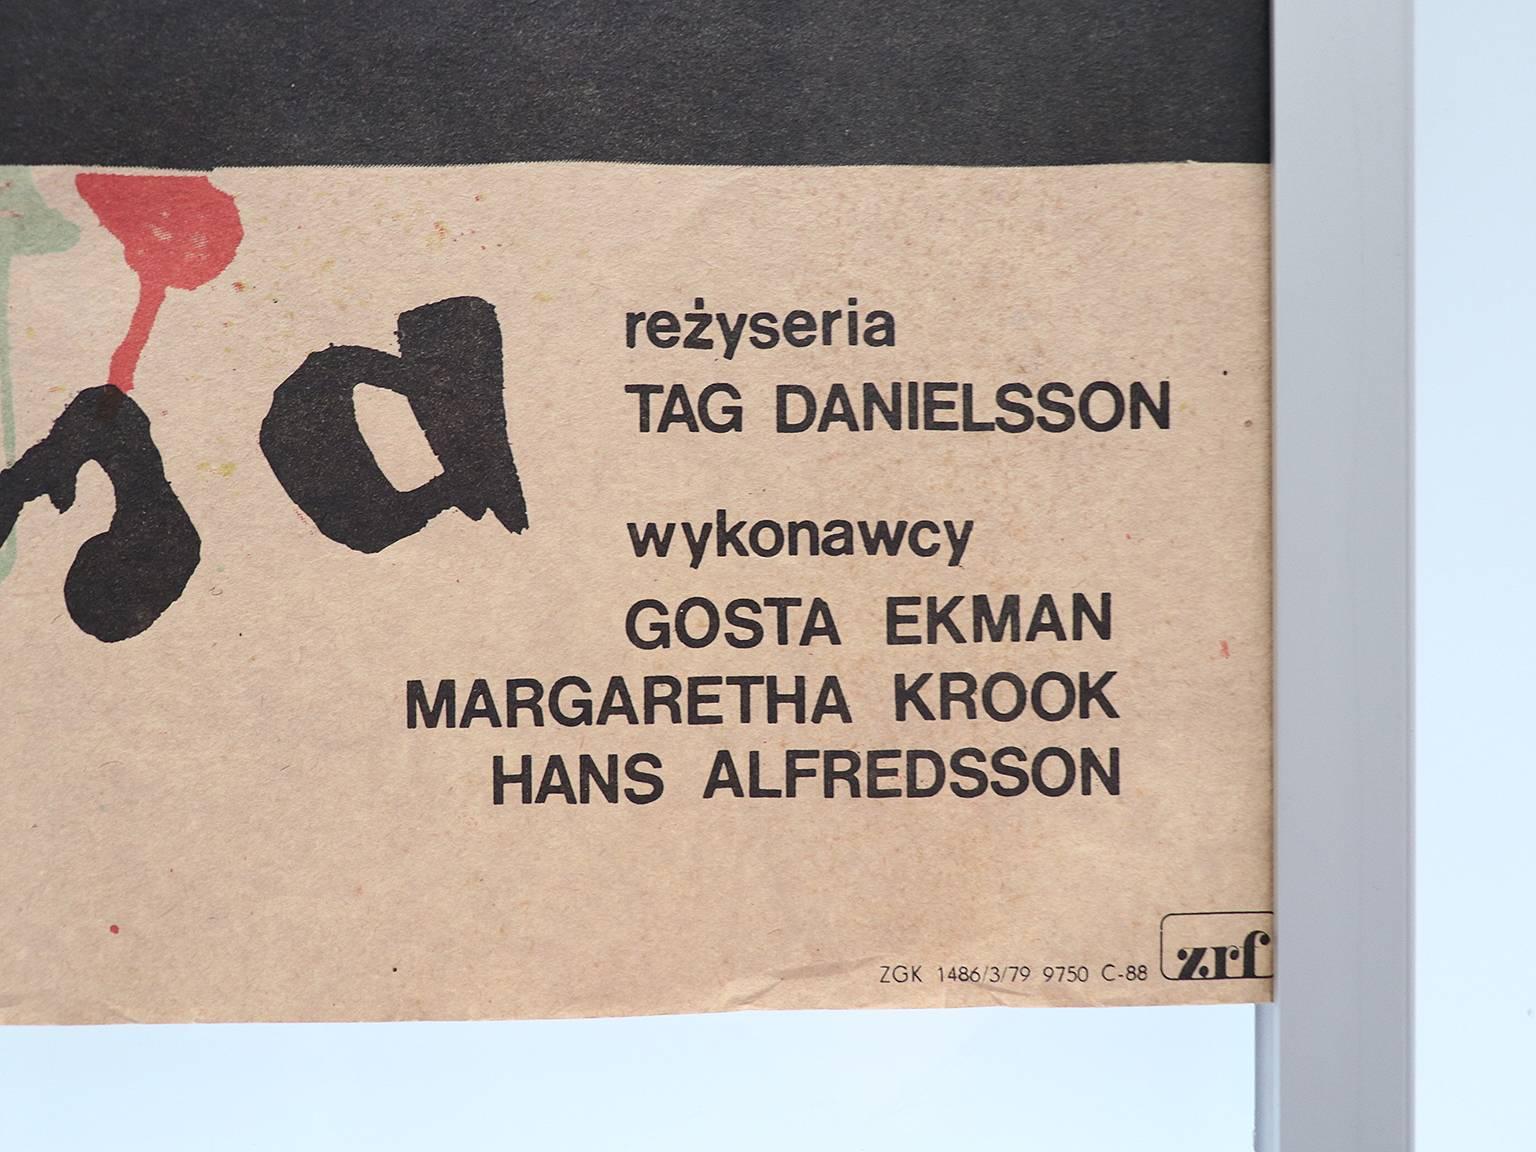 Les aventures de Picasso, affiche polonaise originale pour le film suédois, 1979.
Conçu par Andrzej Klimowski.
Non encadré, n'a pas été plié, ni roulé.
Taille DIN A1 : 670 x 920 mm. 